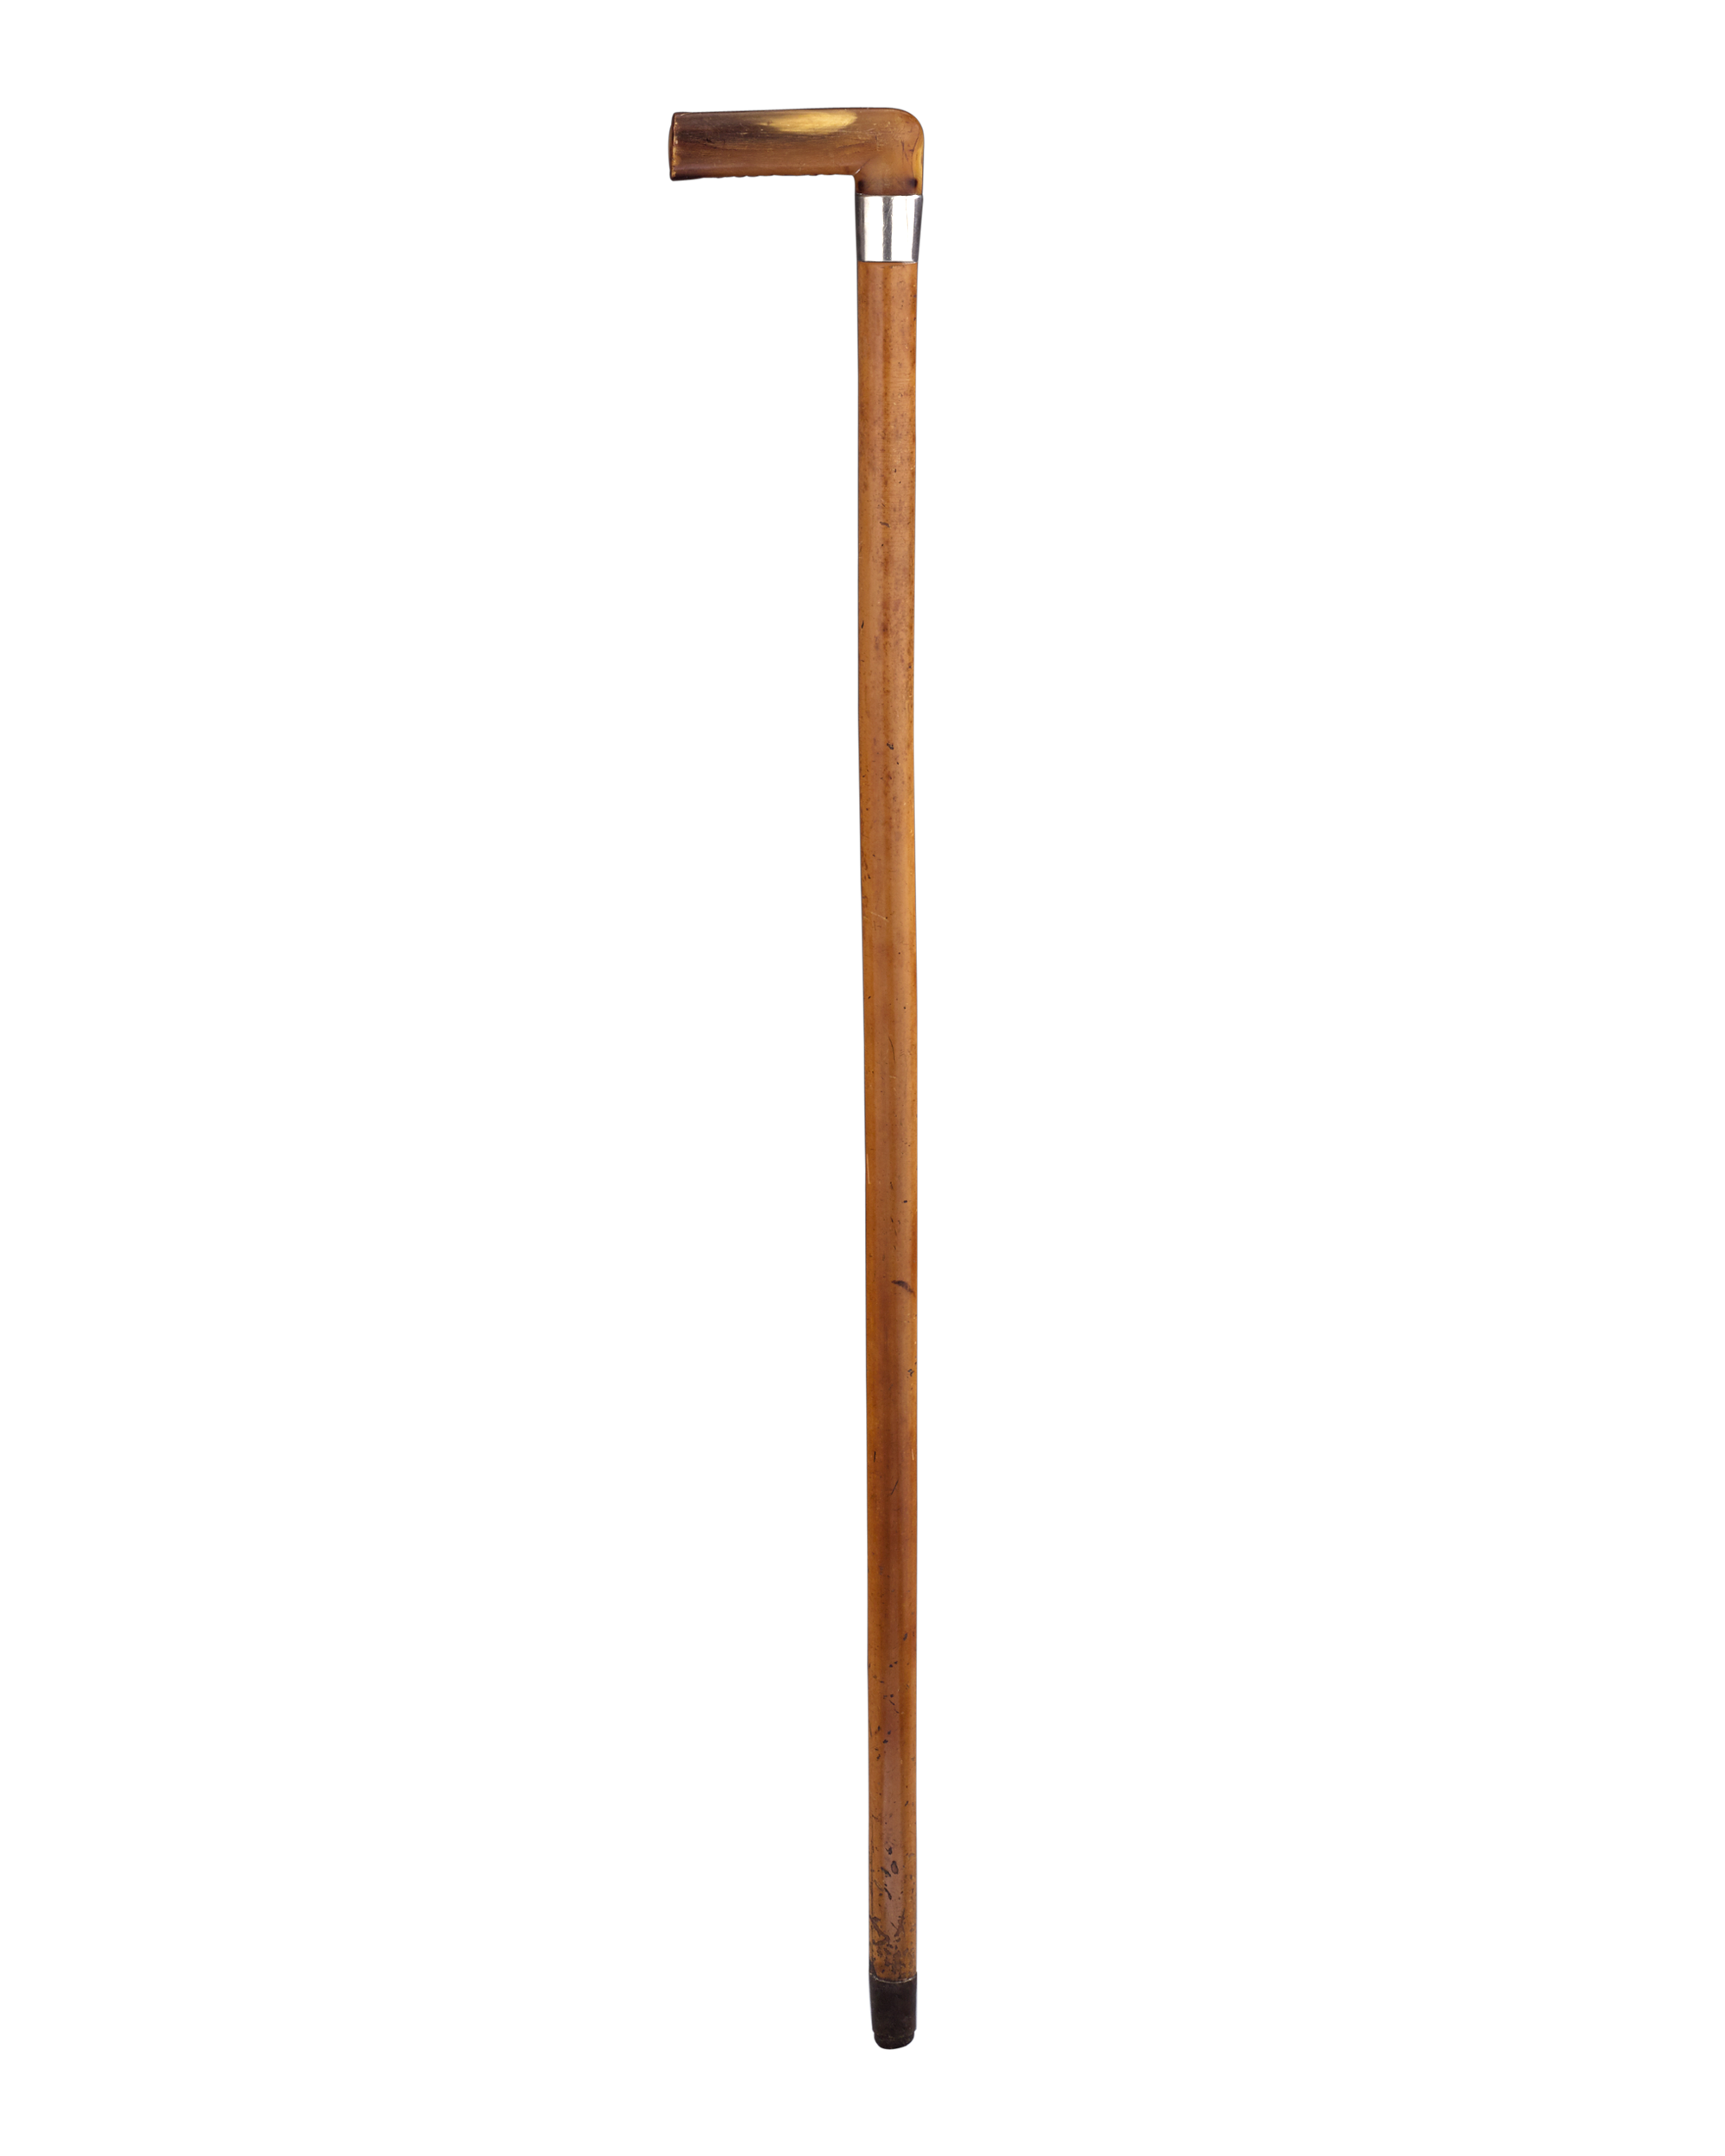 A wooden stick. Палка. Палка для фотошопа. Деревянная палка на прозрачном фоне. Деревянная палка на прозрачном фоне вертикальная.